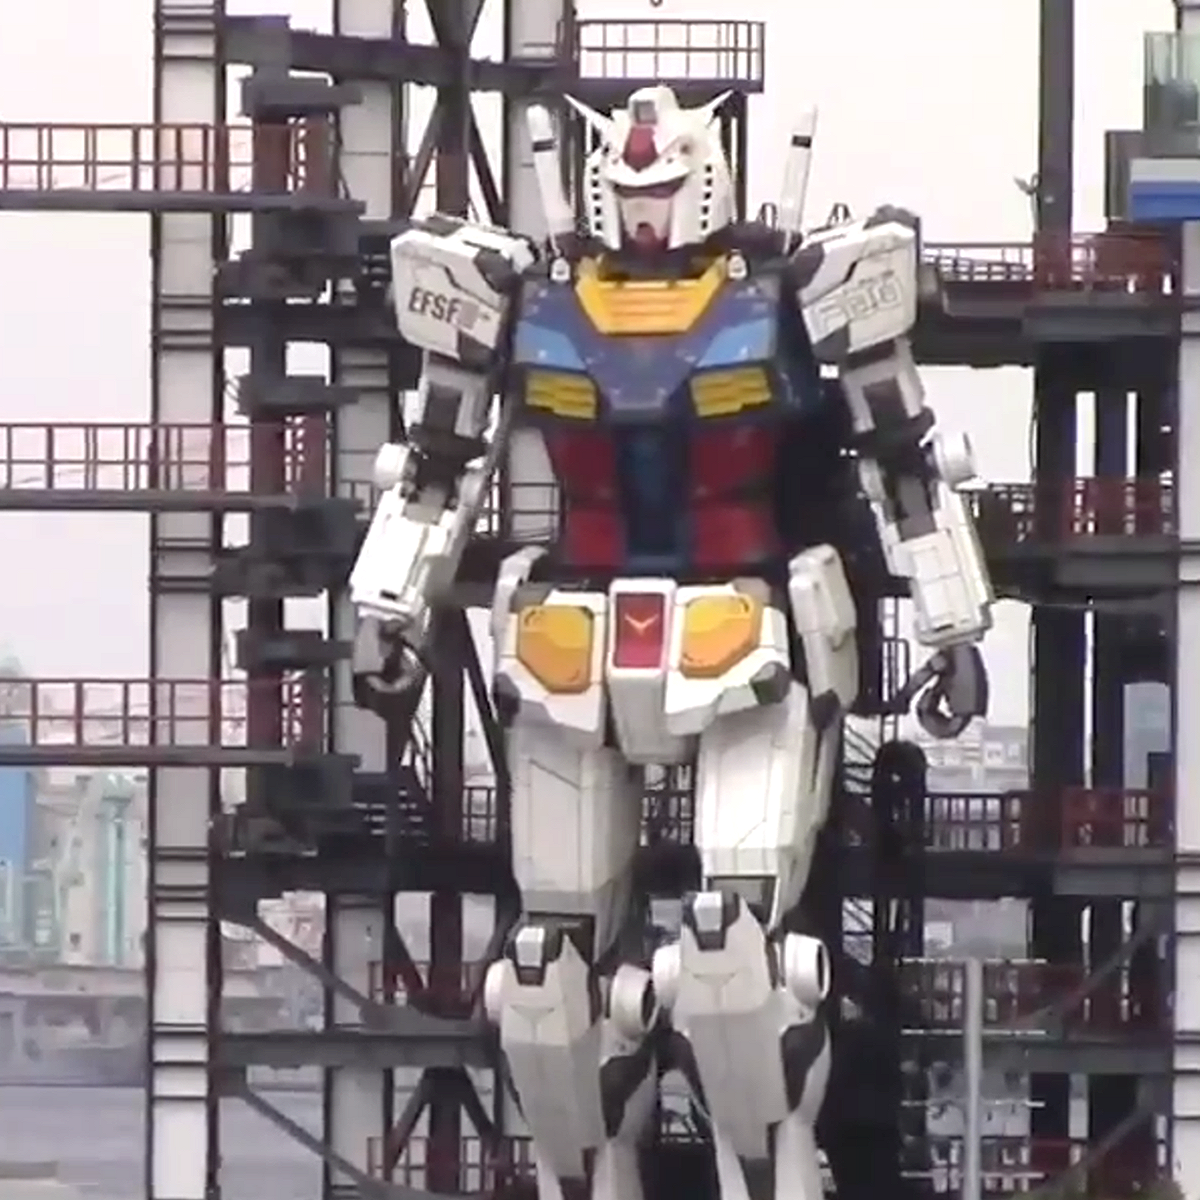 Аниме в полный рост: в японском городе ходит гигантский робот